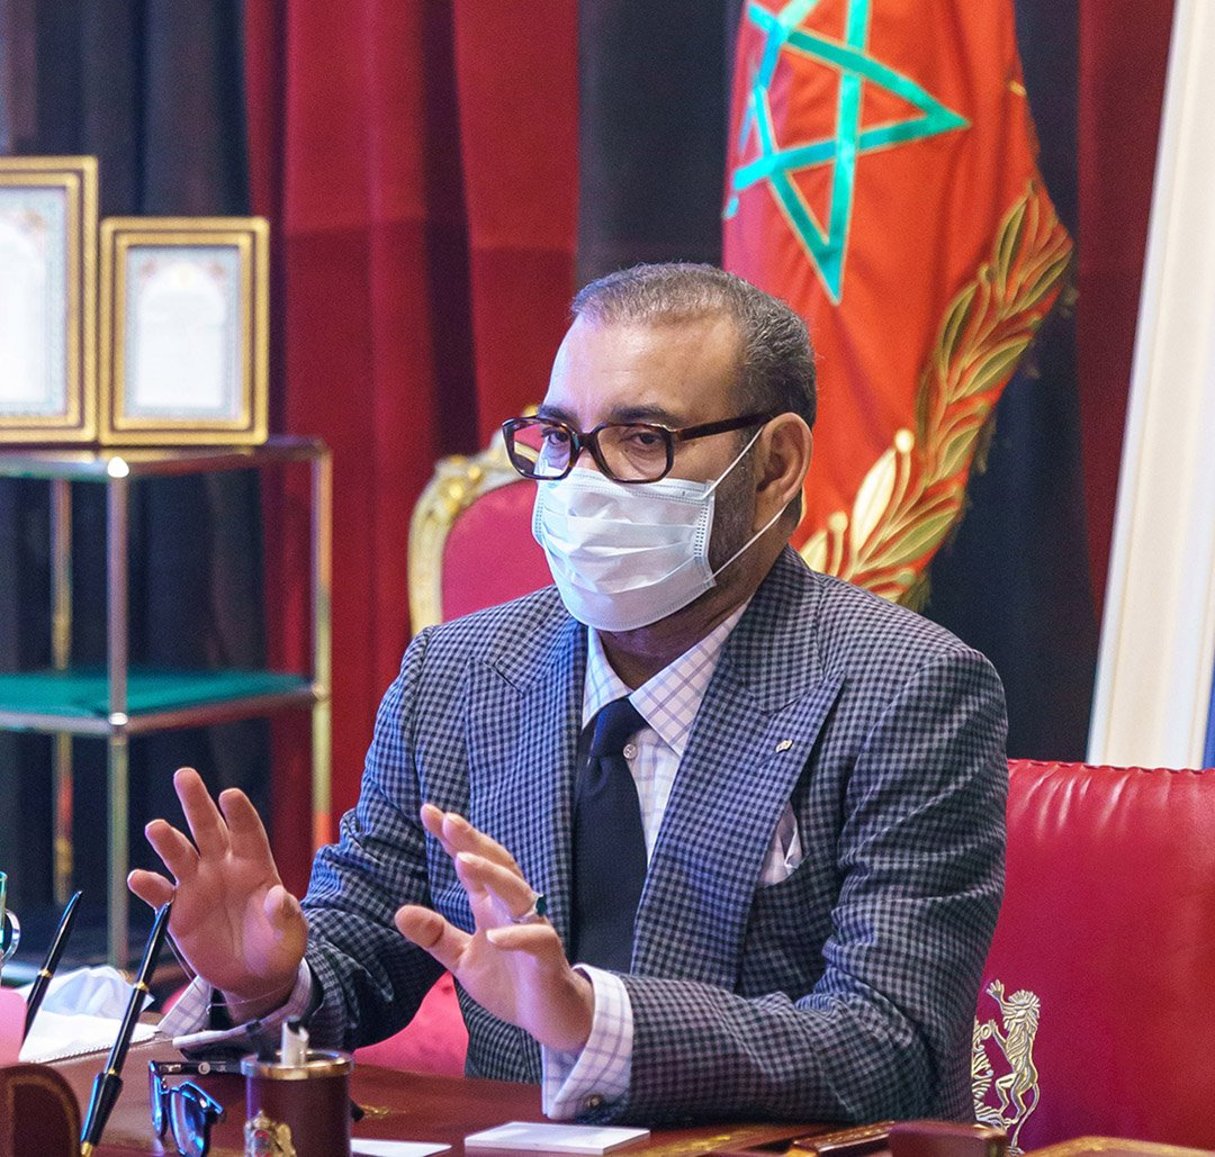 Le roi Mohammed VI préside une séance de travail consacrée à la stratégie anti-coronavirus au Palais royal de Rabat, le 9 novembre 2020. © AZZOUZ BOUKALLOUCH/MAP